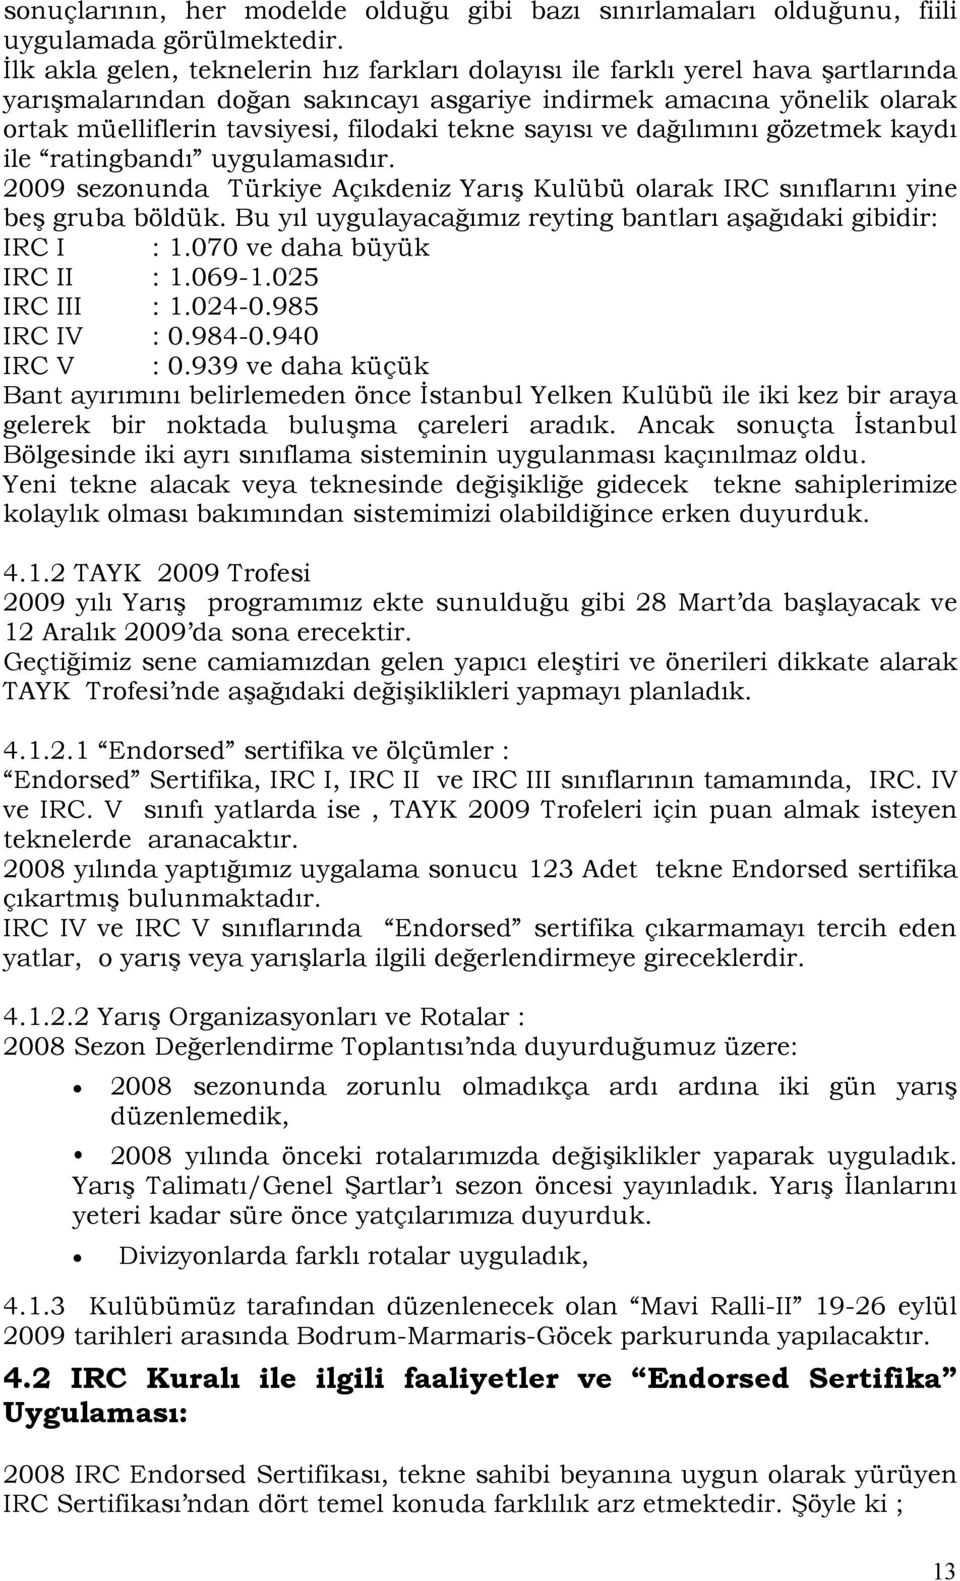 tekne sayısı ve dağılımını gözetmek kaydı ile ratingbandı uygulamasıdır. 2009 sezonunda Türkiye Açıkdeniz Yarış Kulübü olarak IRC sınıflarını yine beş gruba böldük.